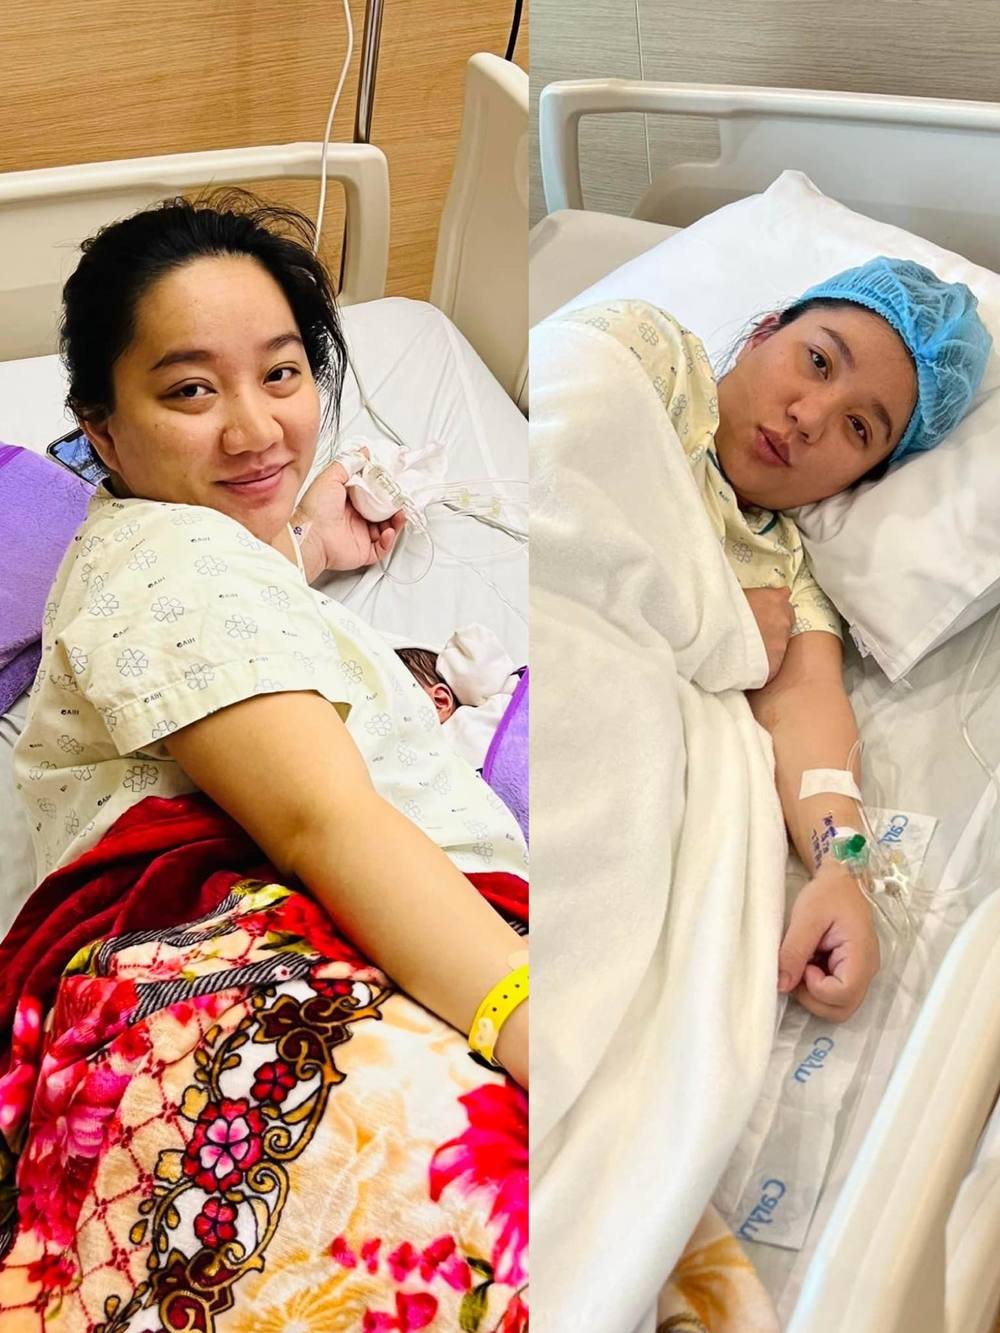  Quỳnh Quỳnh đã lấy lại được sức khỏe sau khi sinh. (Ảnh: Facebook Quỳnh Quỳnh)